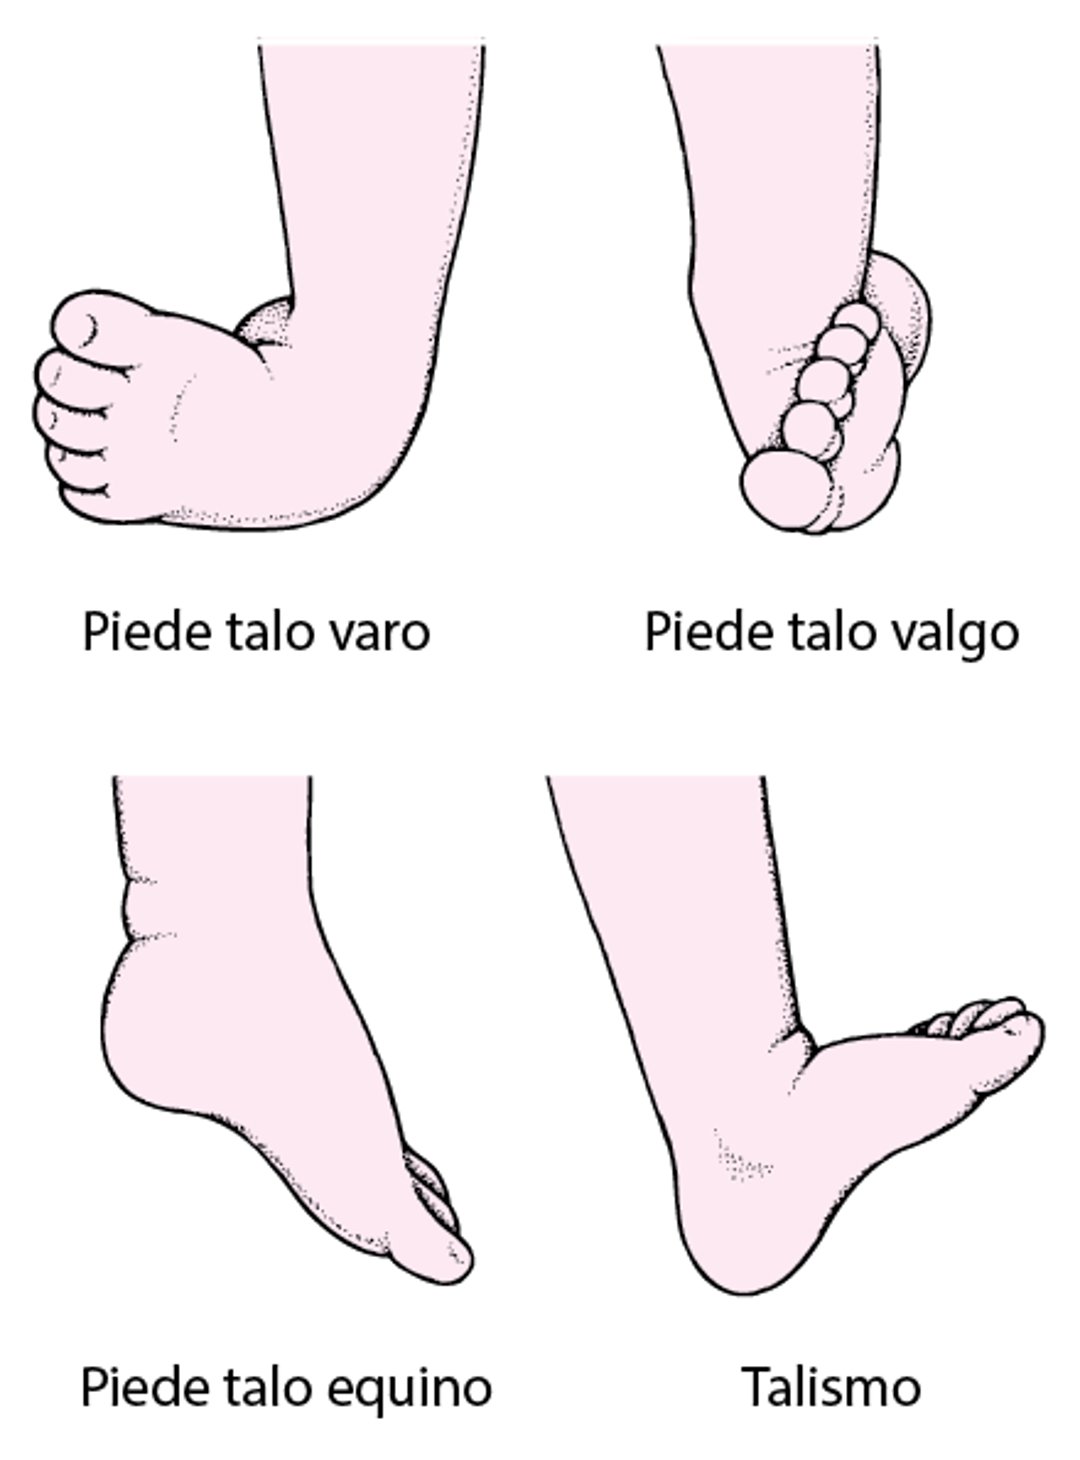 Tipi comuni di piede torto